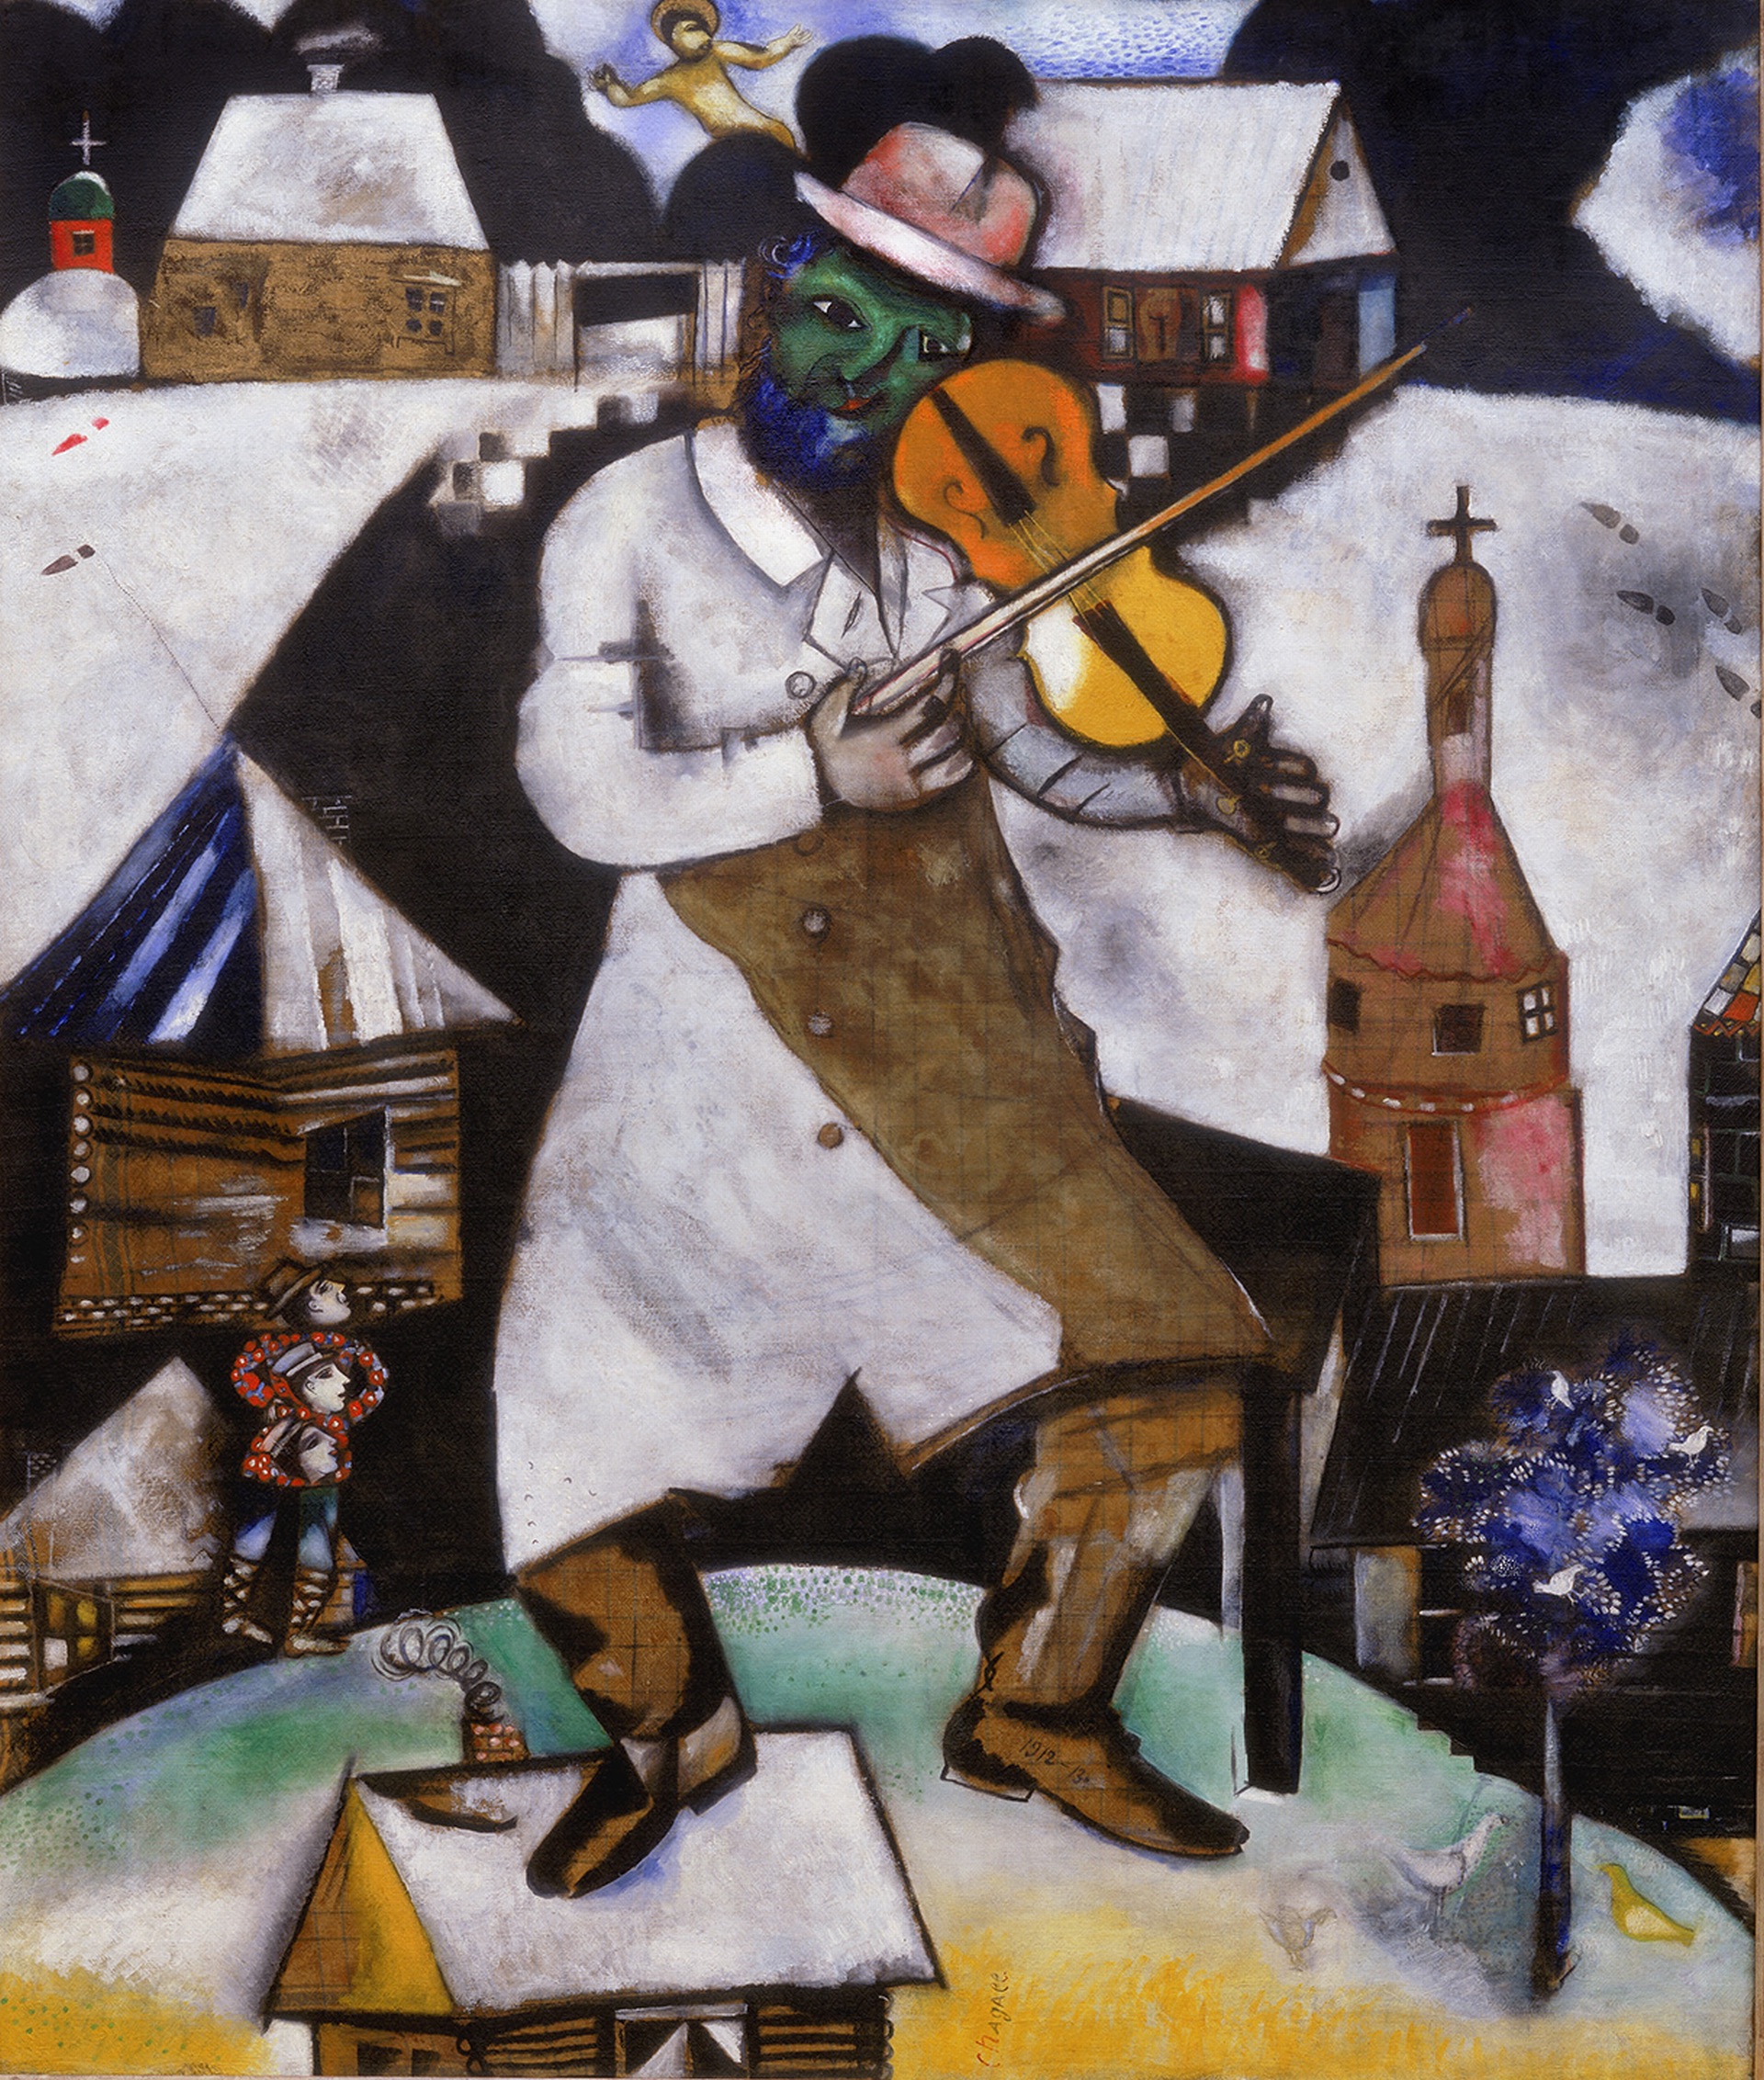 Houslista by Marc Chagall - 1912-1913 - 196.5 x 166.5 cm 